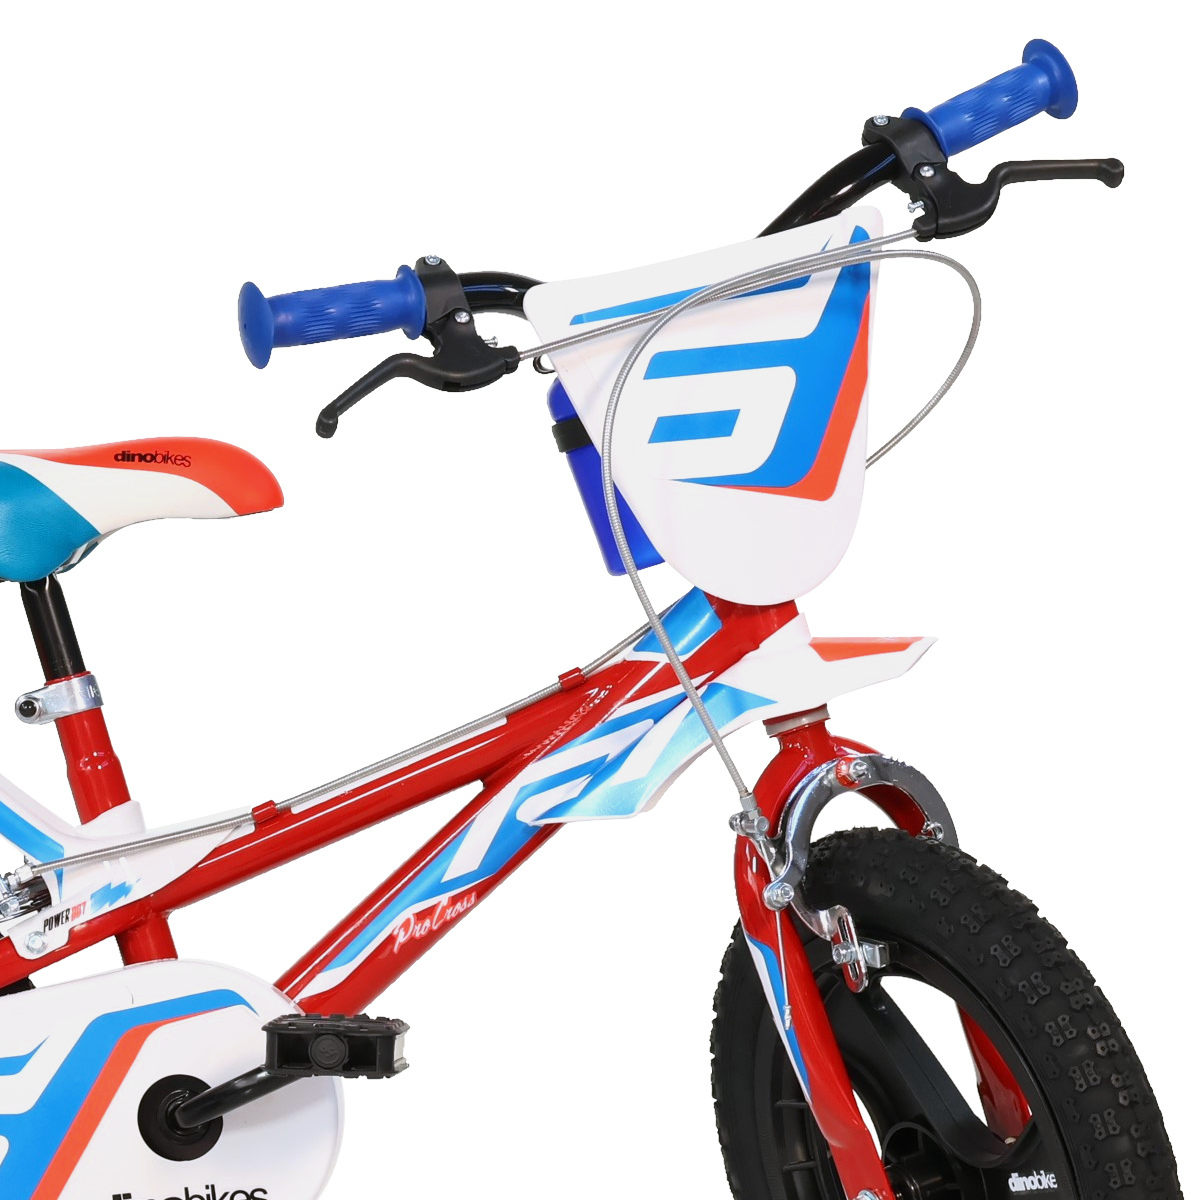 Bicicleta Dino Bikes R14"